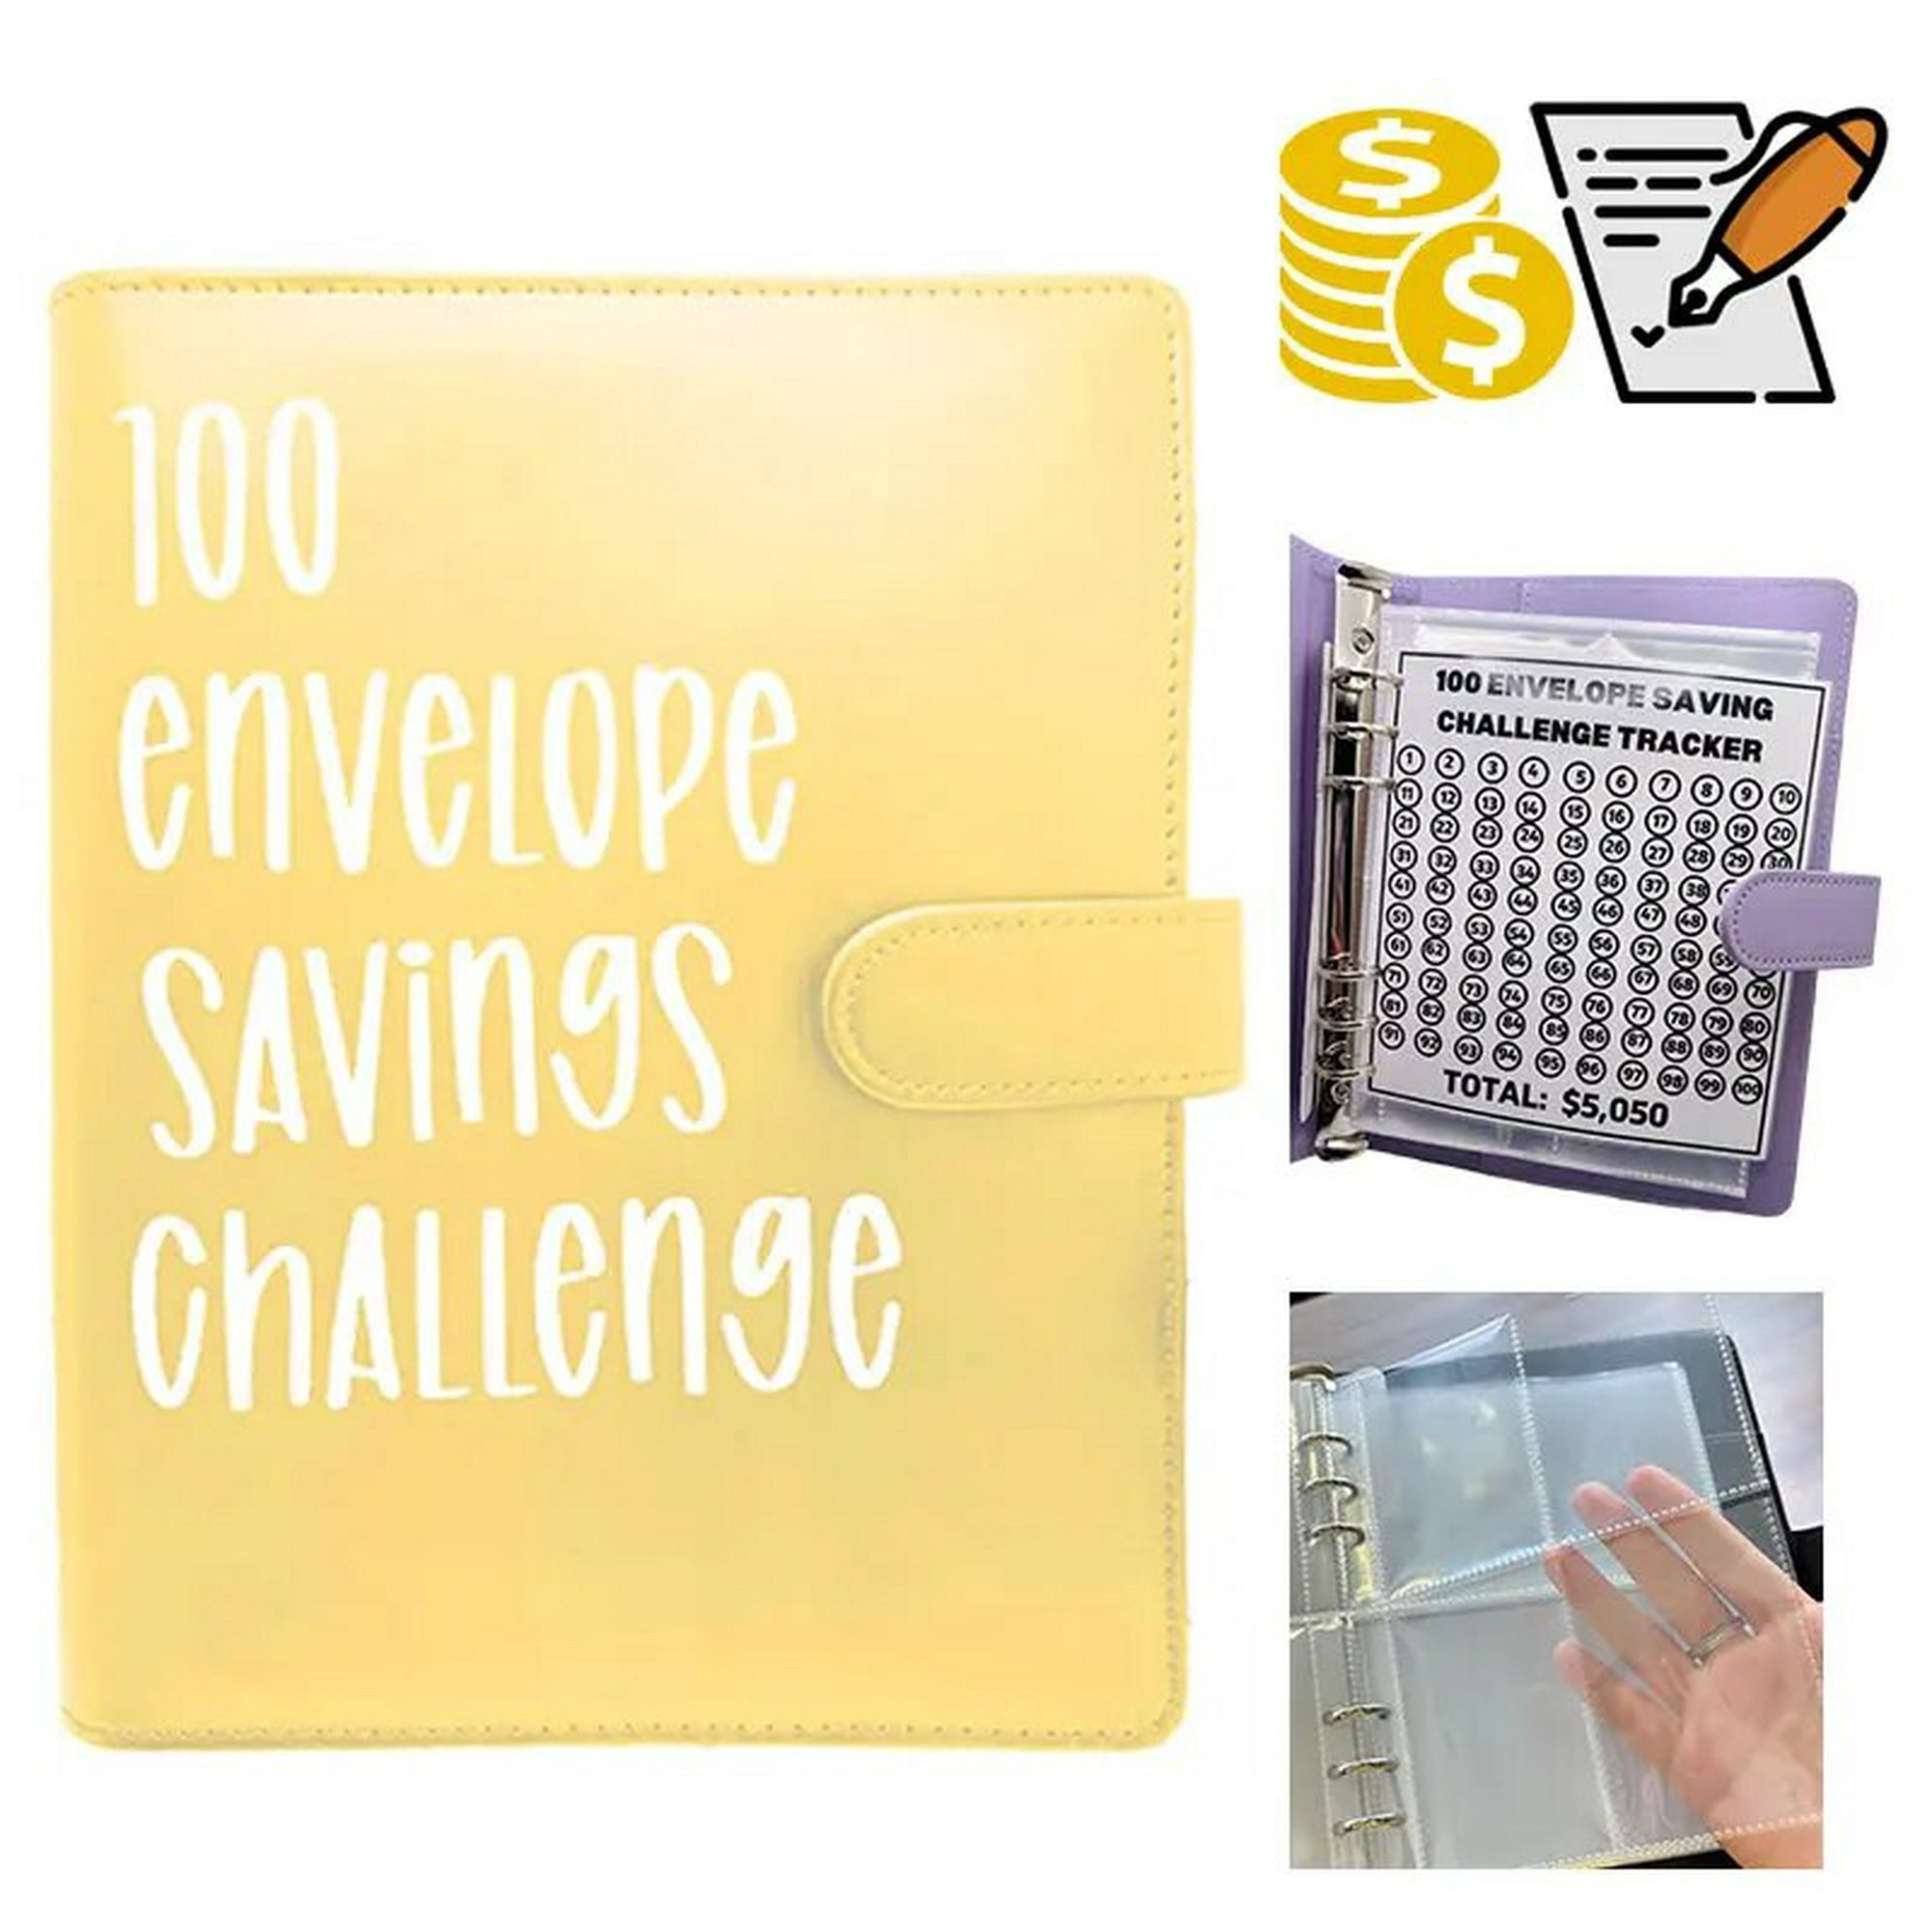 Carpeta de desafío de 100 sobres, forma fácil y divertida de